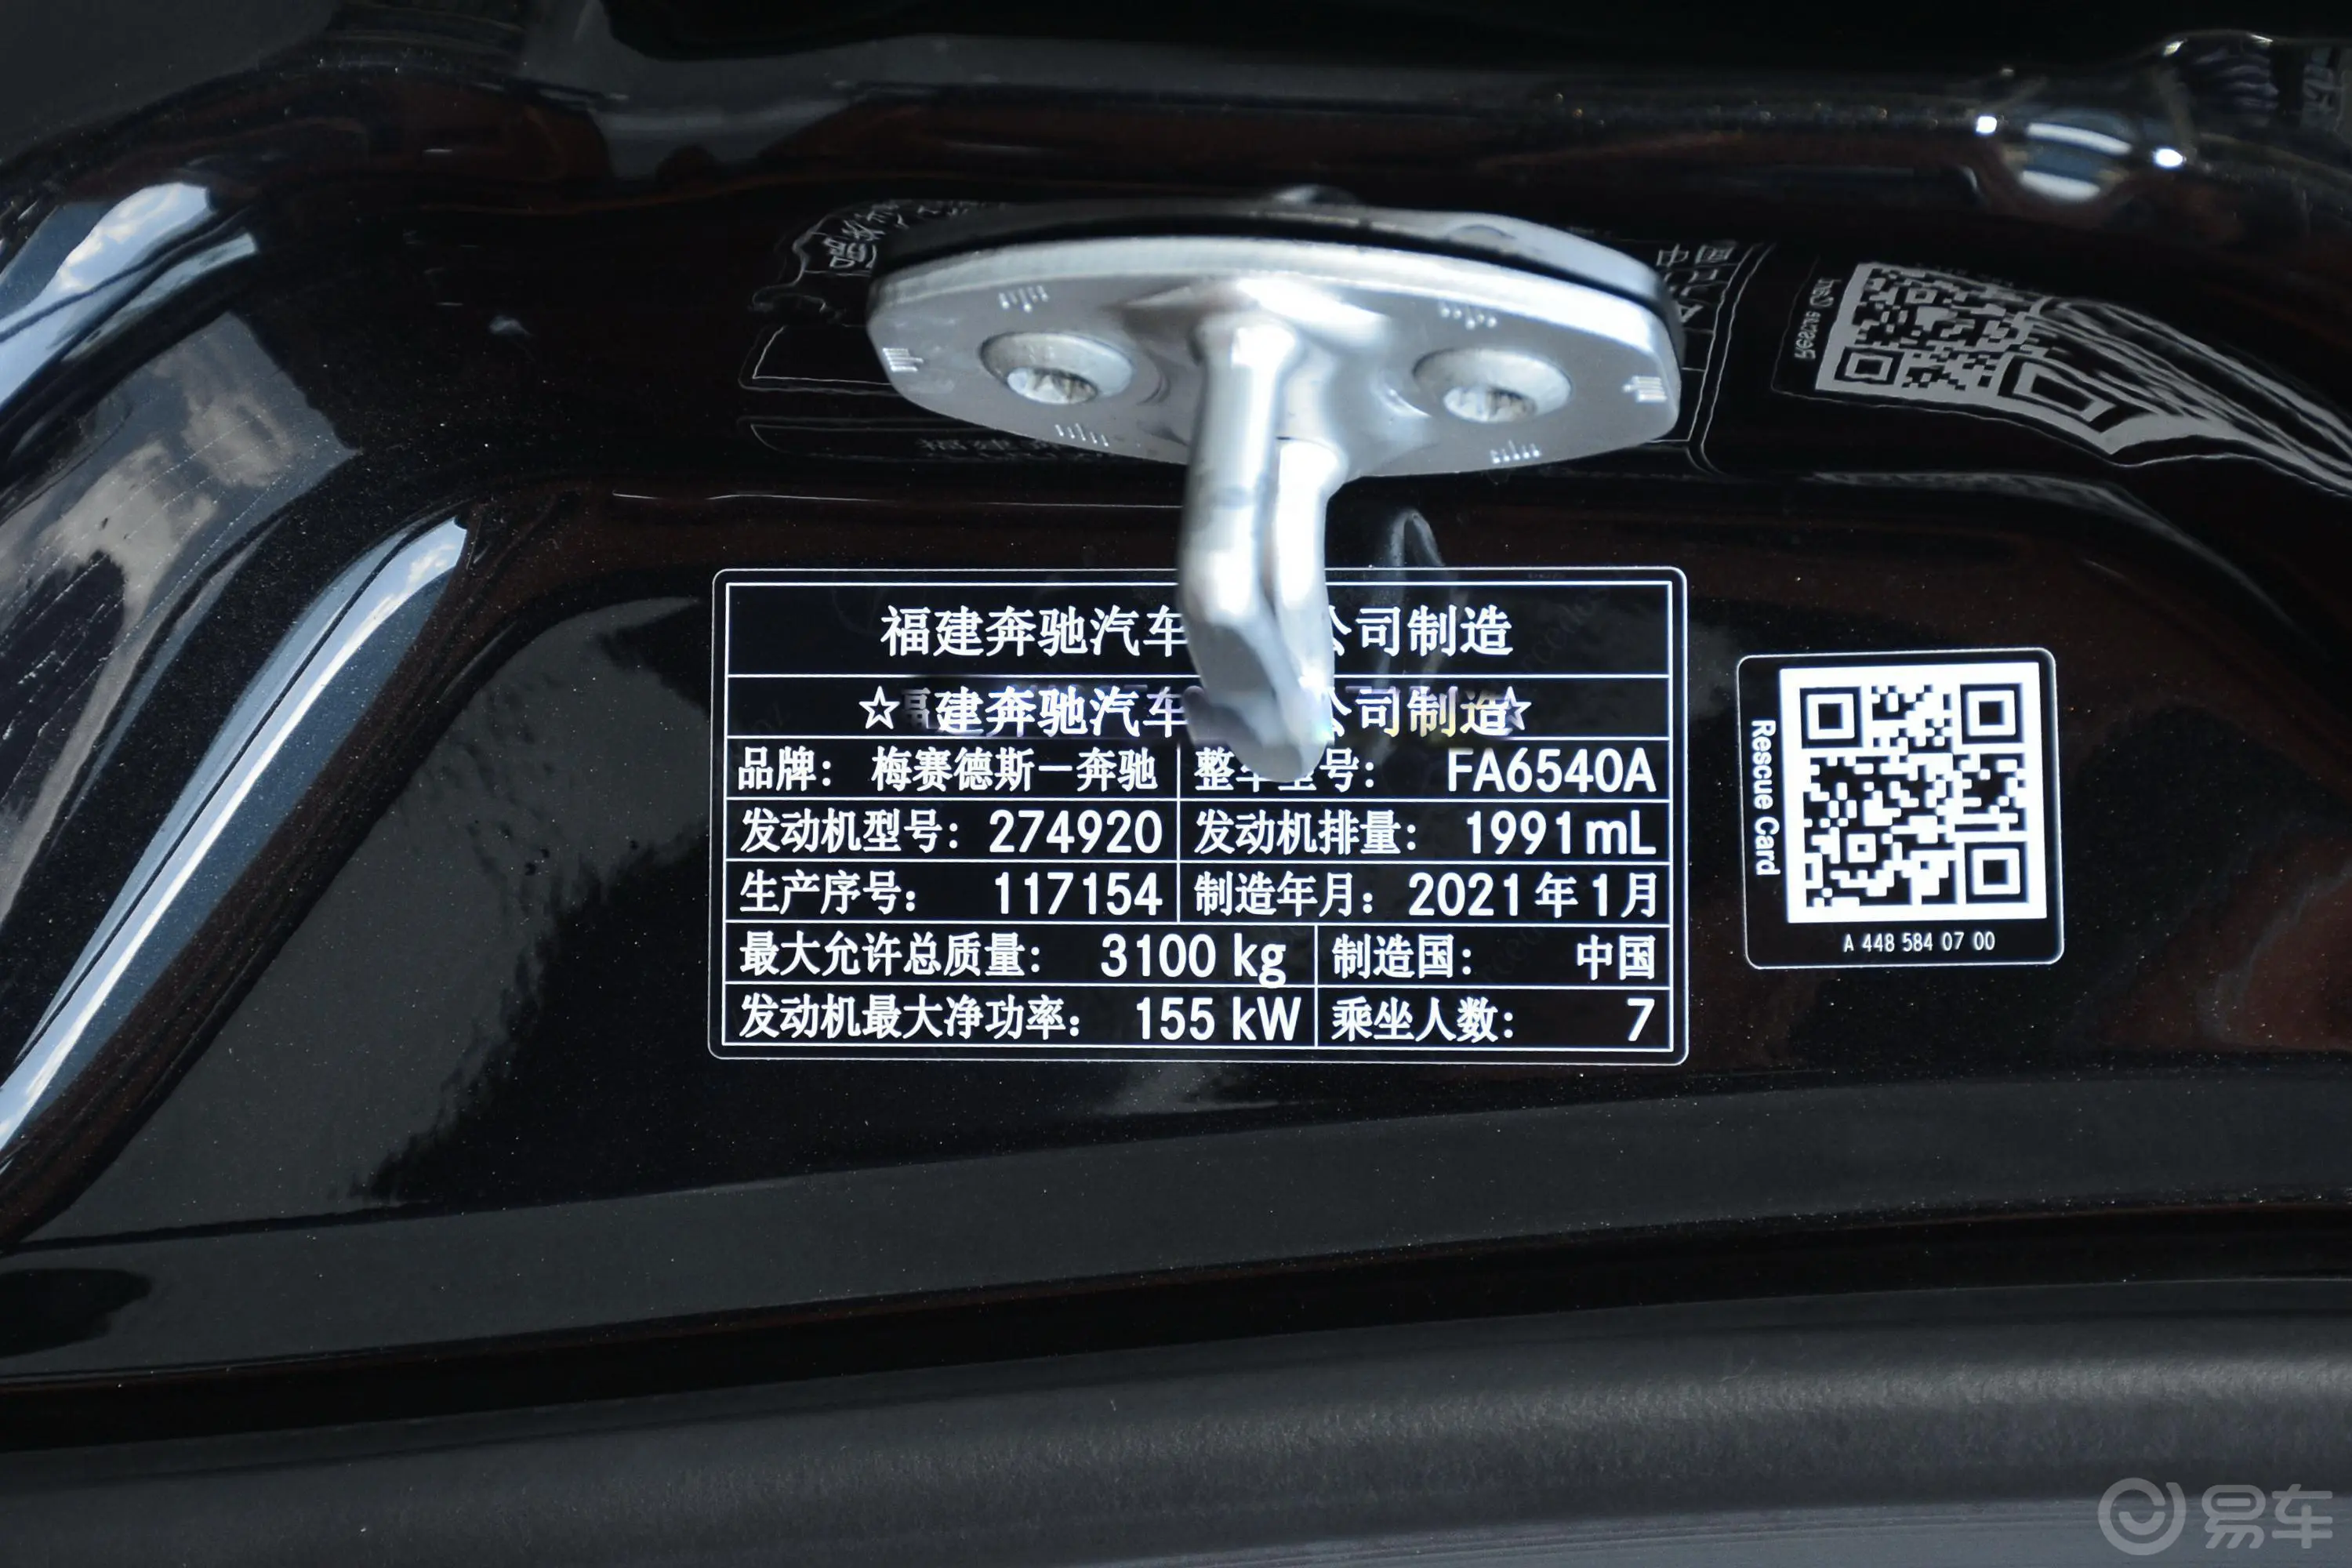 迈莎锐V级MV600 2.0T Y燿影车辆信息铭牌